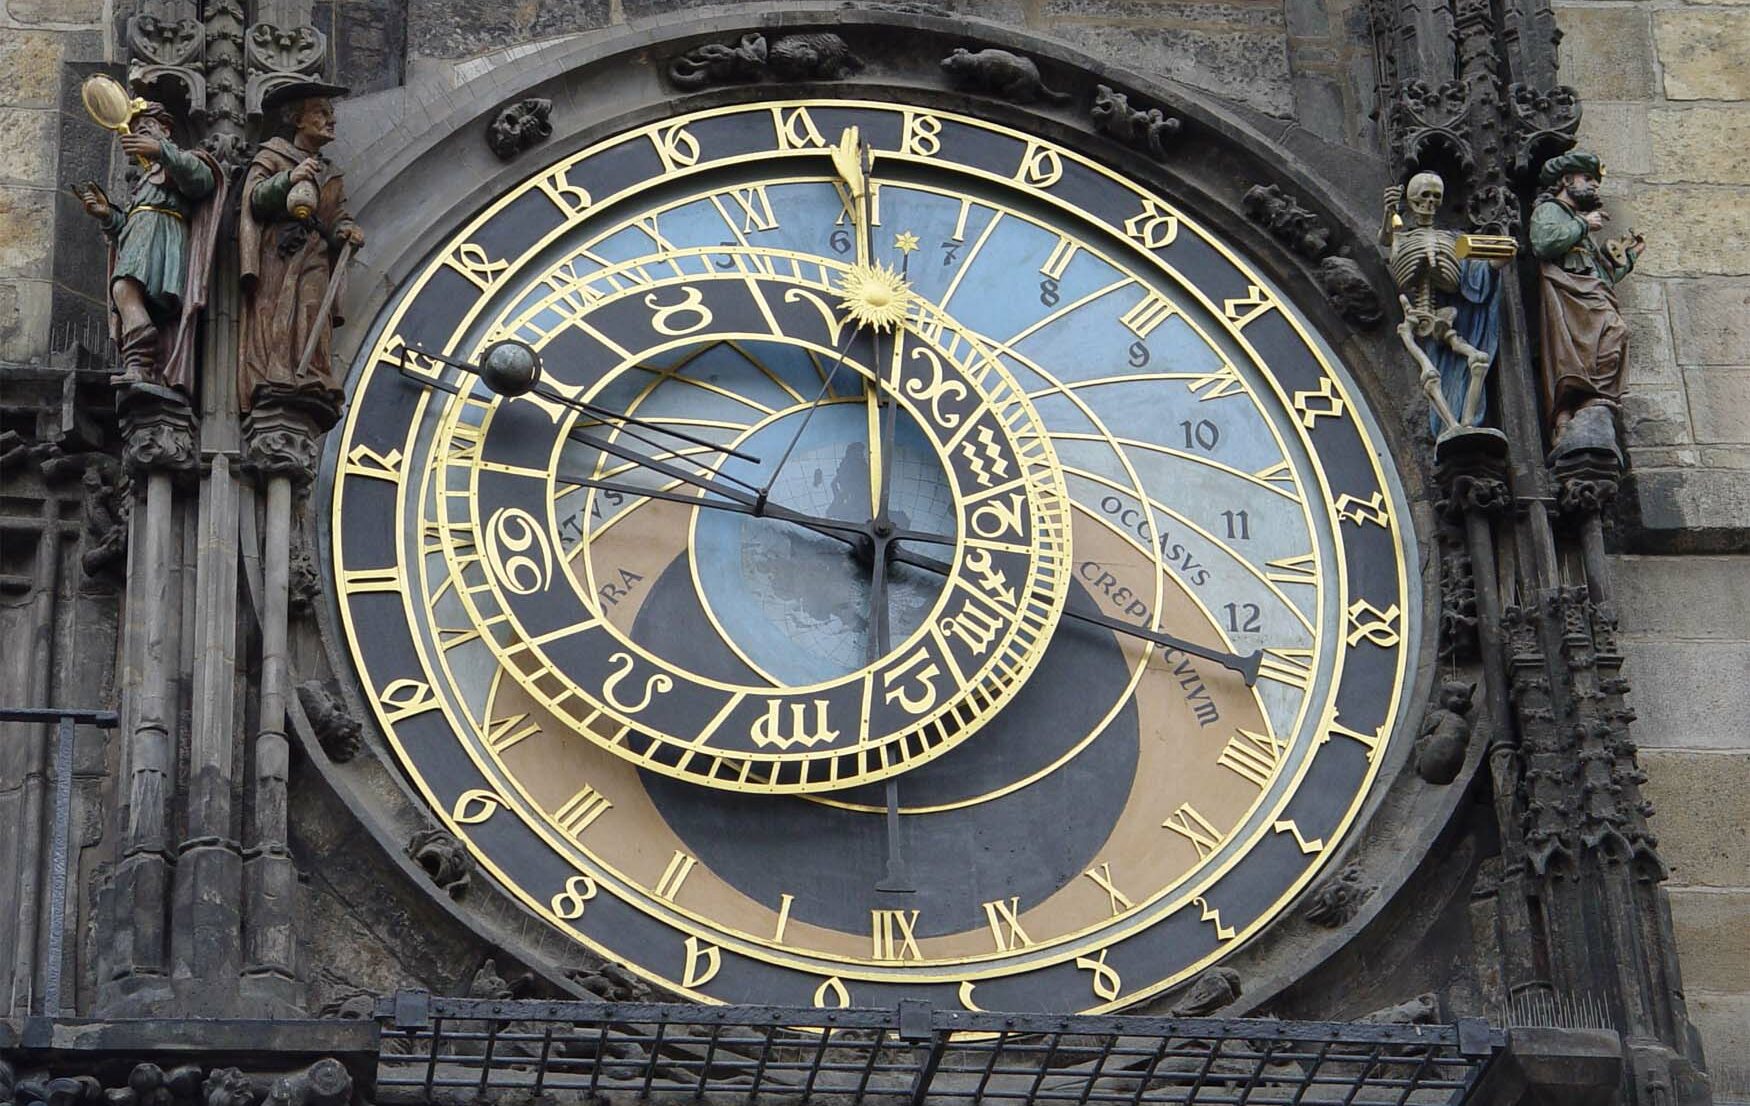 Astronomical clock Prague